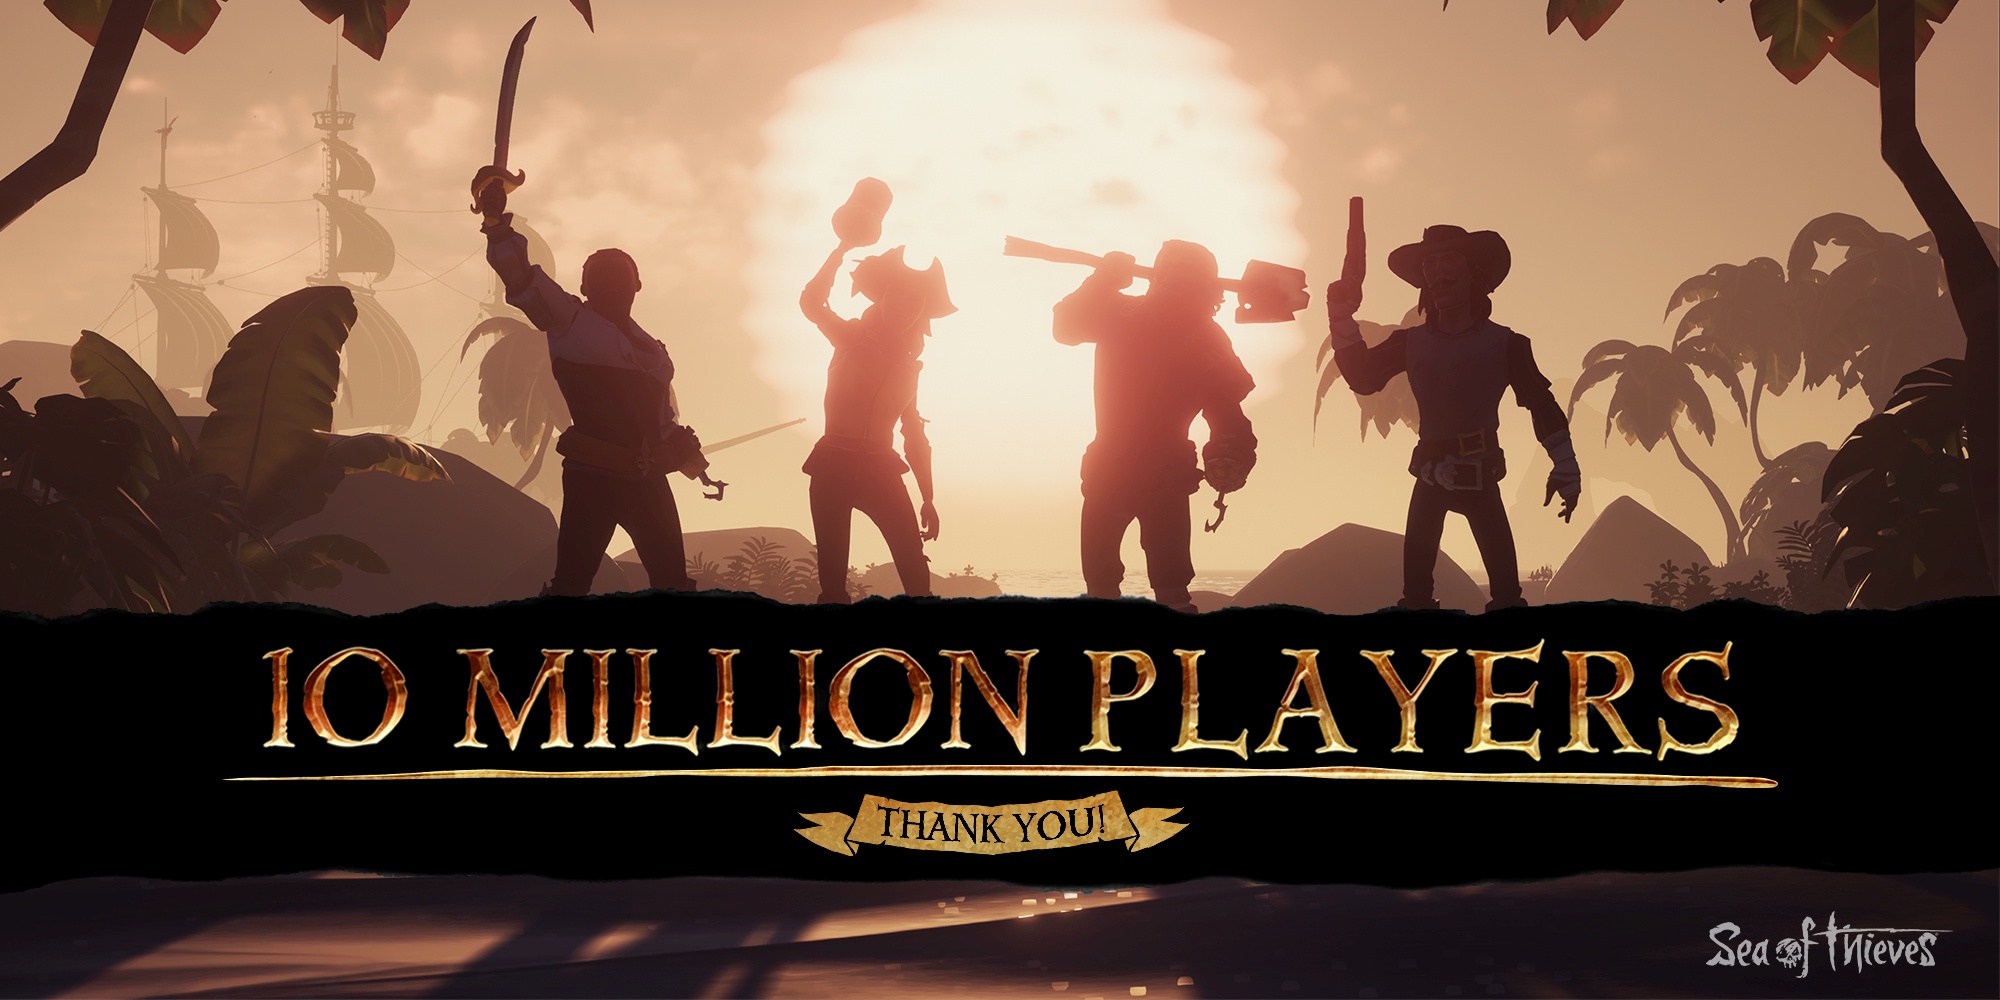 Sea of Thieves: Legends of the Seas-Update feiert das 10 Millionen Spieler-Jubiläum HERO